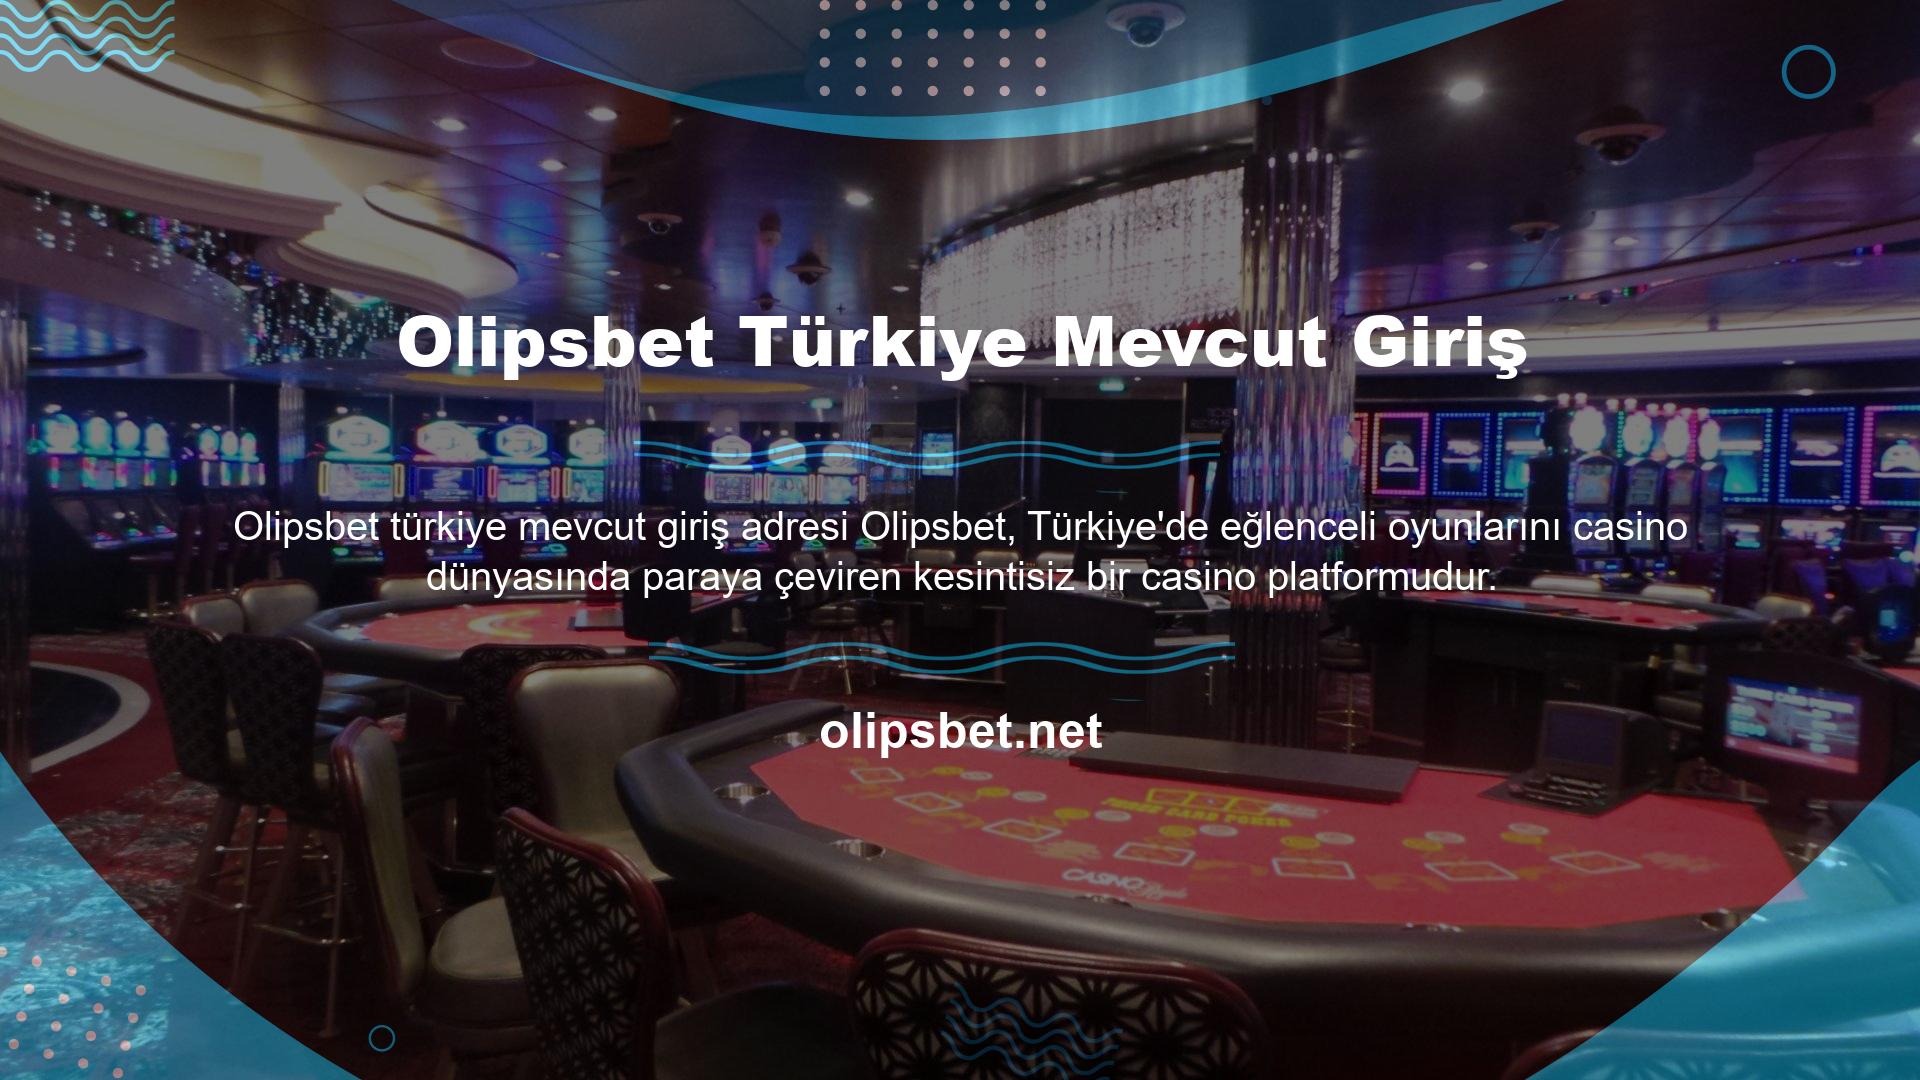 Türk casino severler için farklı bahis türleri ve casino oyunları sunmaktadır